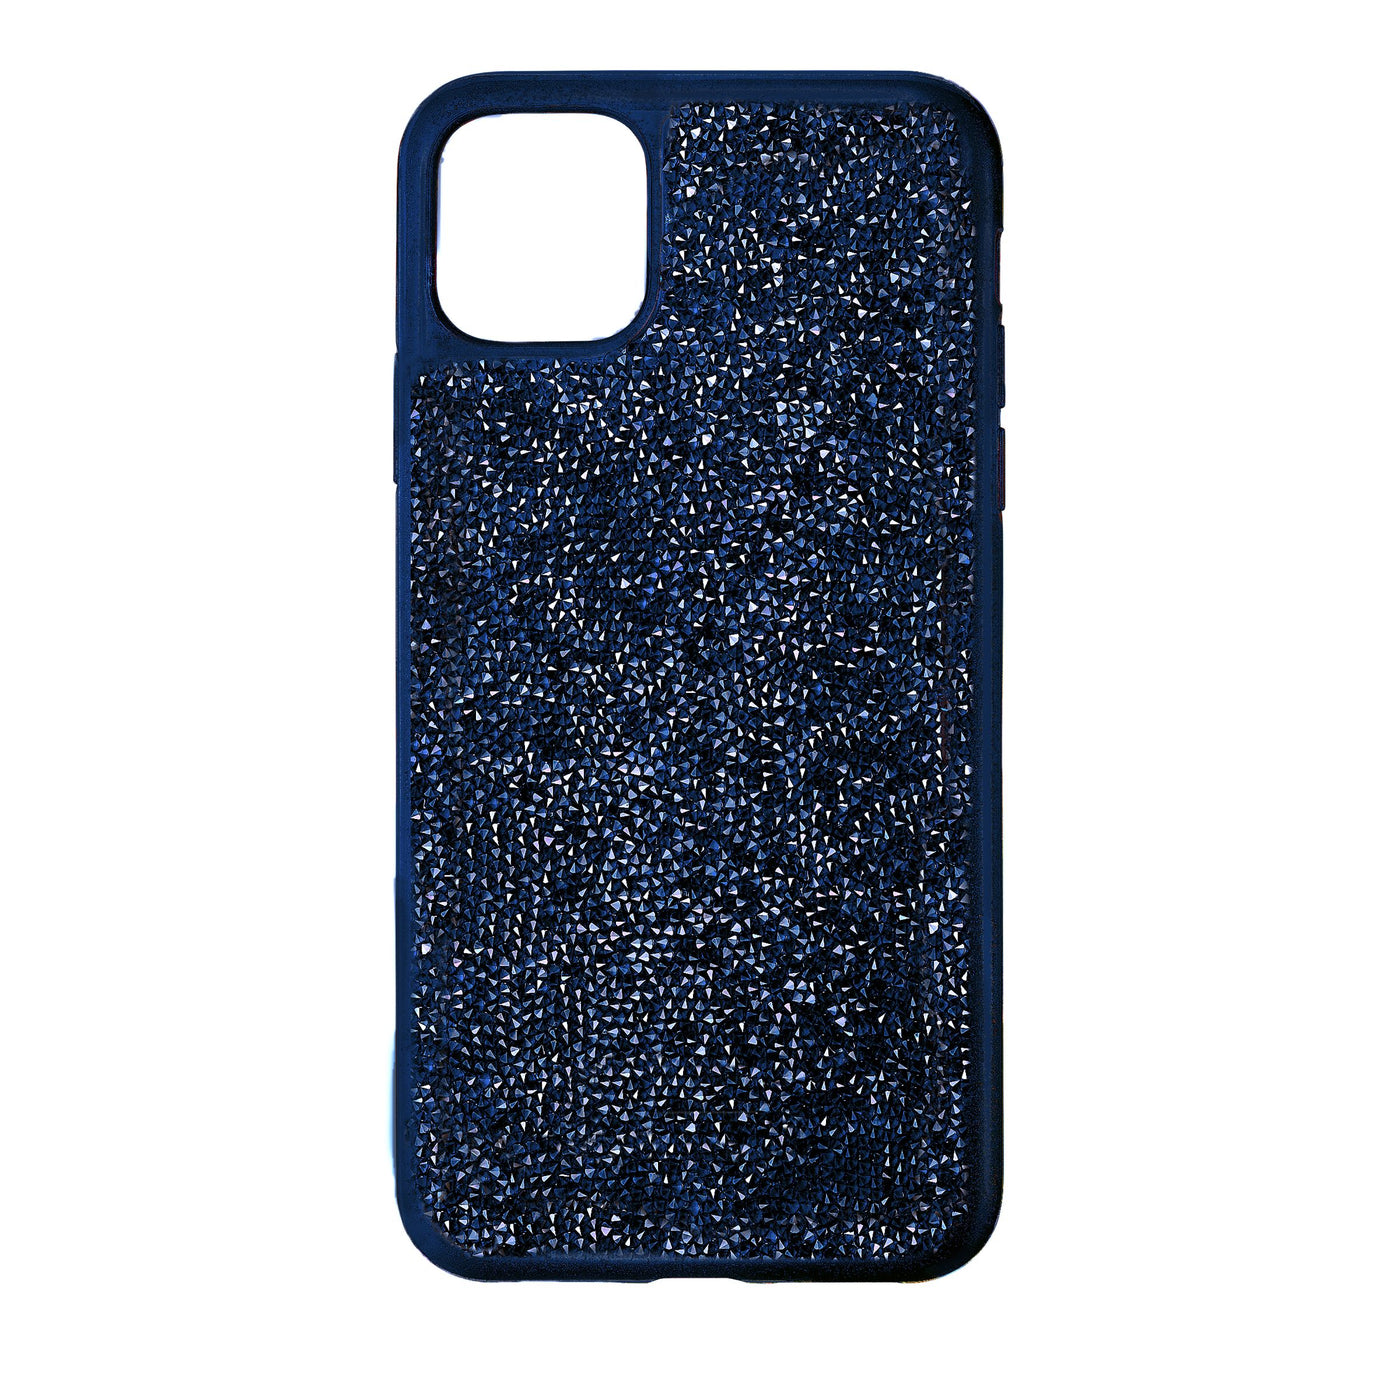 SWAROVSKI כיסוי לאייפון GLAM ROCK IPhone® 12 MINI כחול